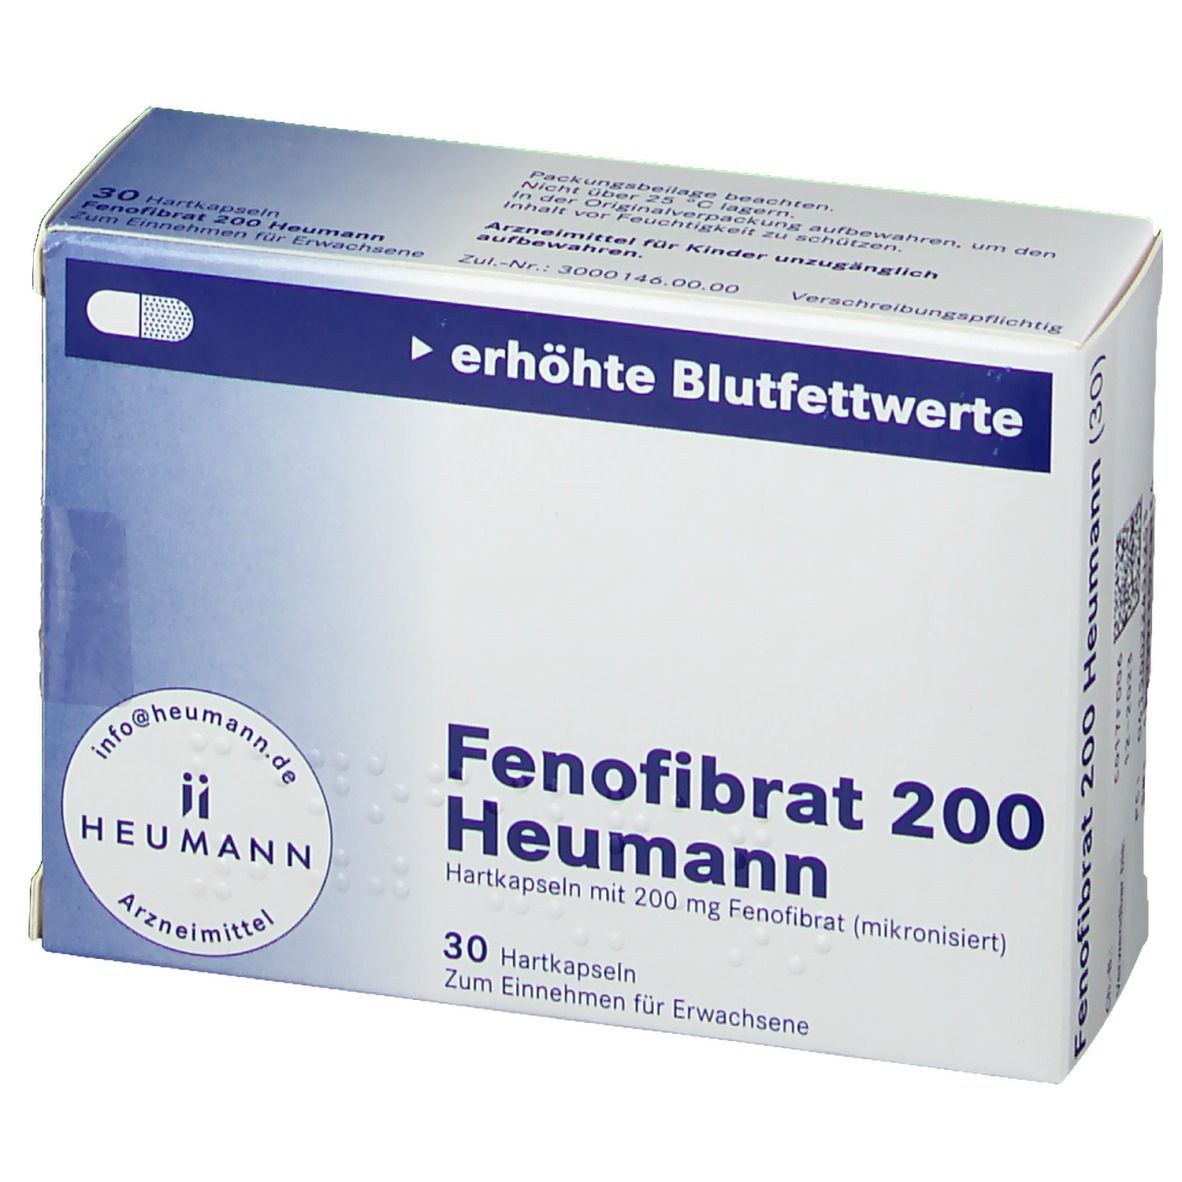 Fenofibrat 200 Heumann